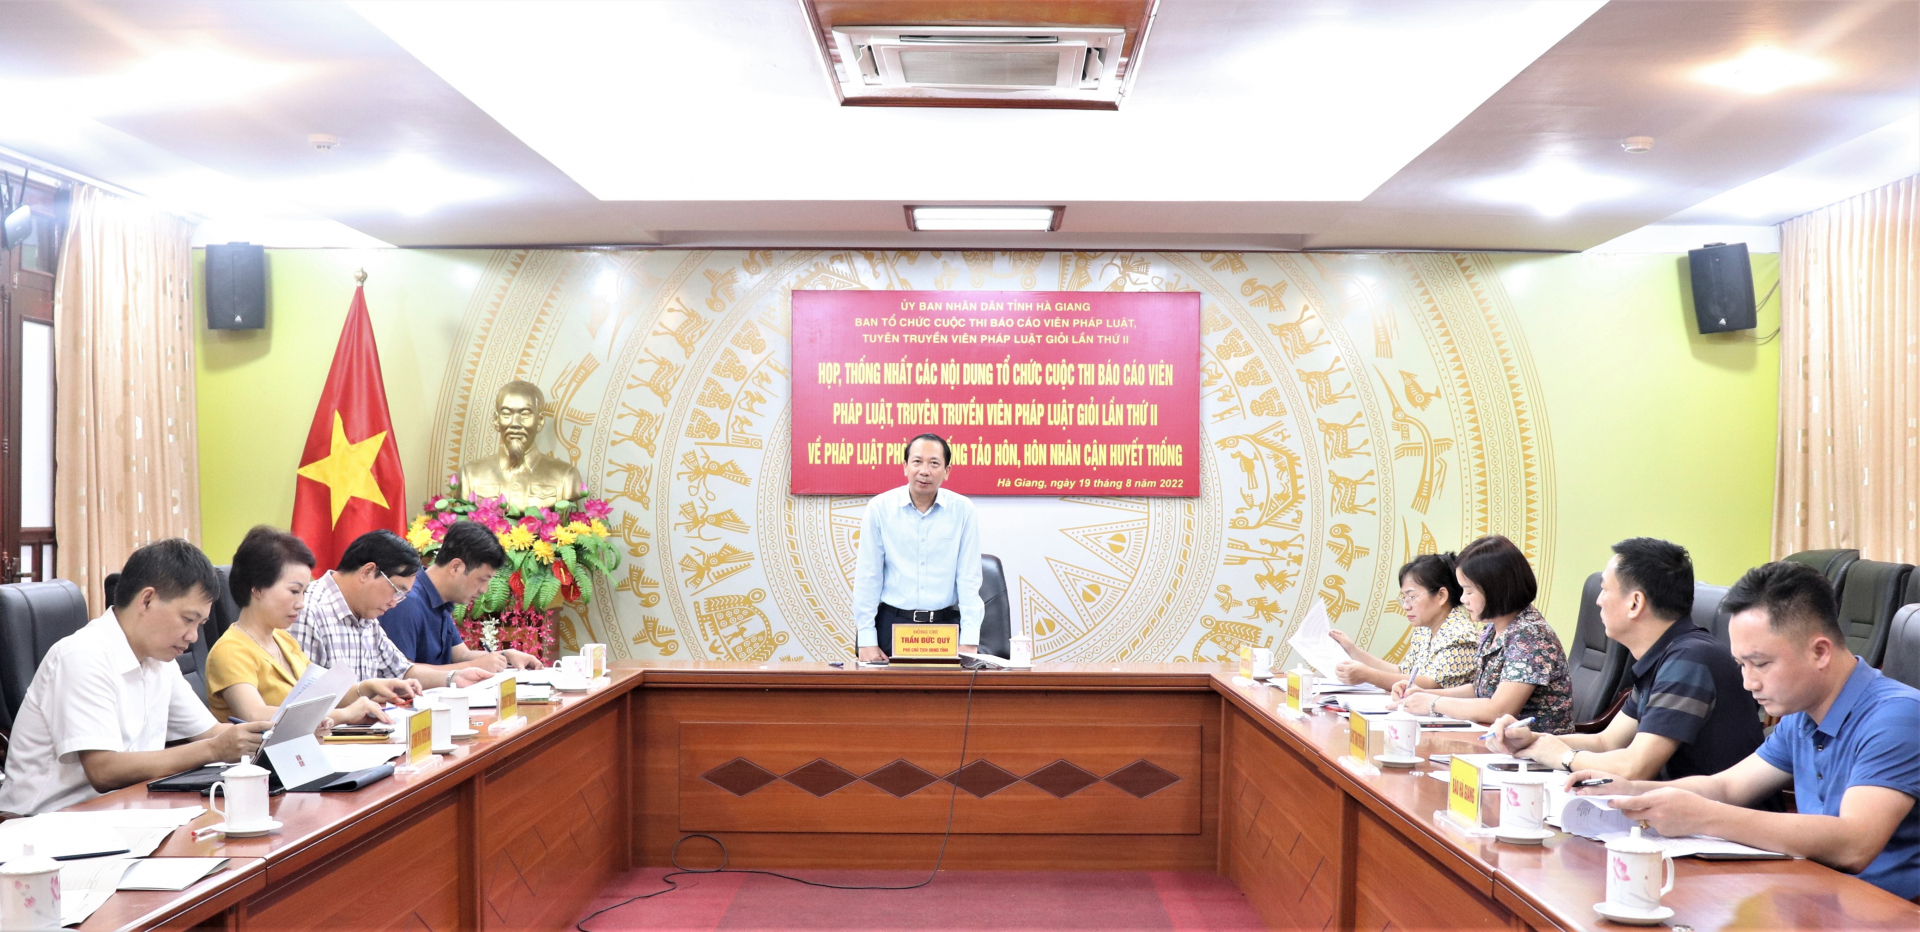 Phó Chủ tịch UBND tỉnh Trần Đức Quý phát biểu kết luận tại buổi họp.